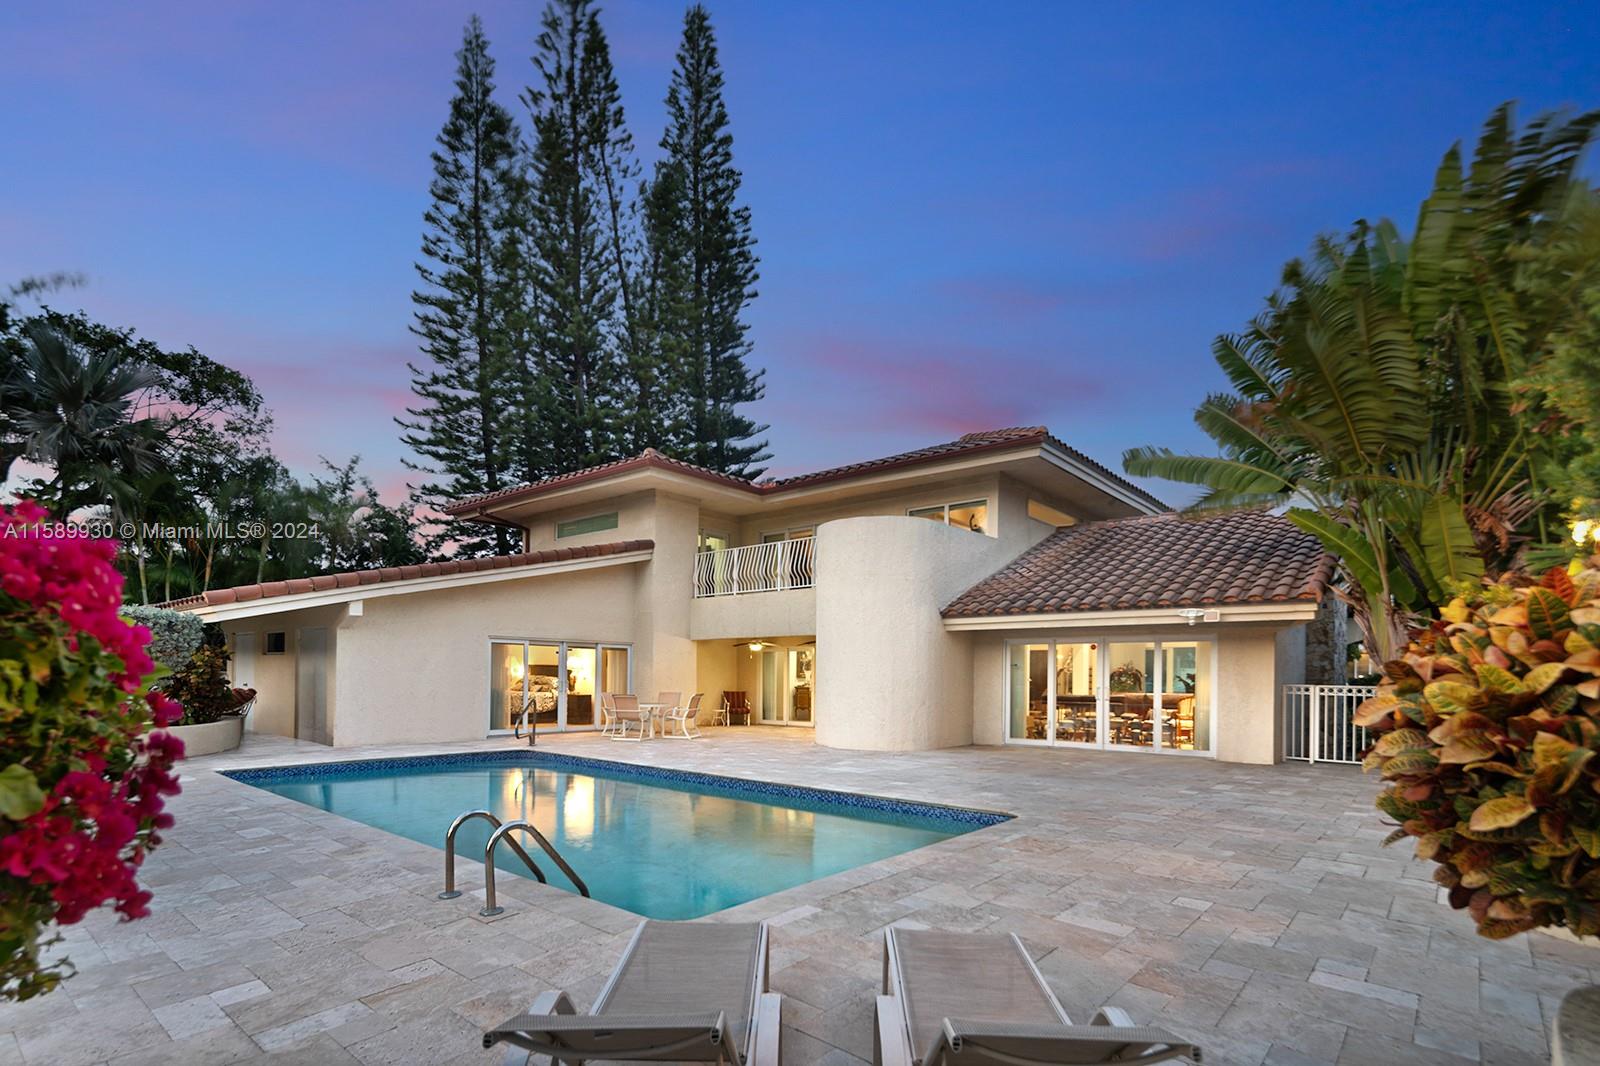 Property for Sale at 530 Ocean Blvd, Golden Beach, Miami-Dade County, Florida - Bedrooms: 4 
Bathrooms: 5  - $4,195,000